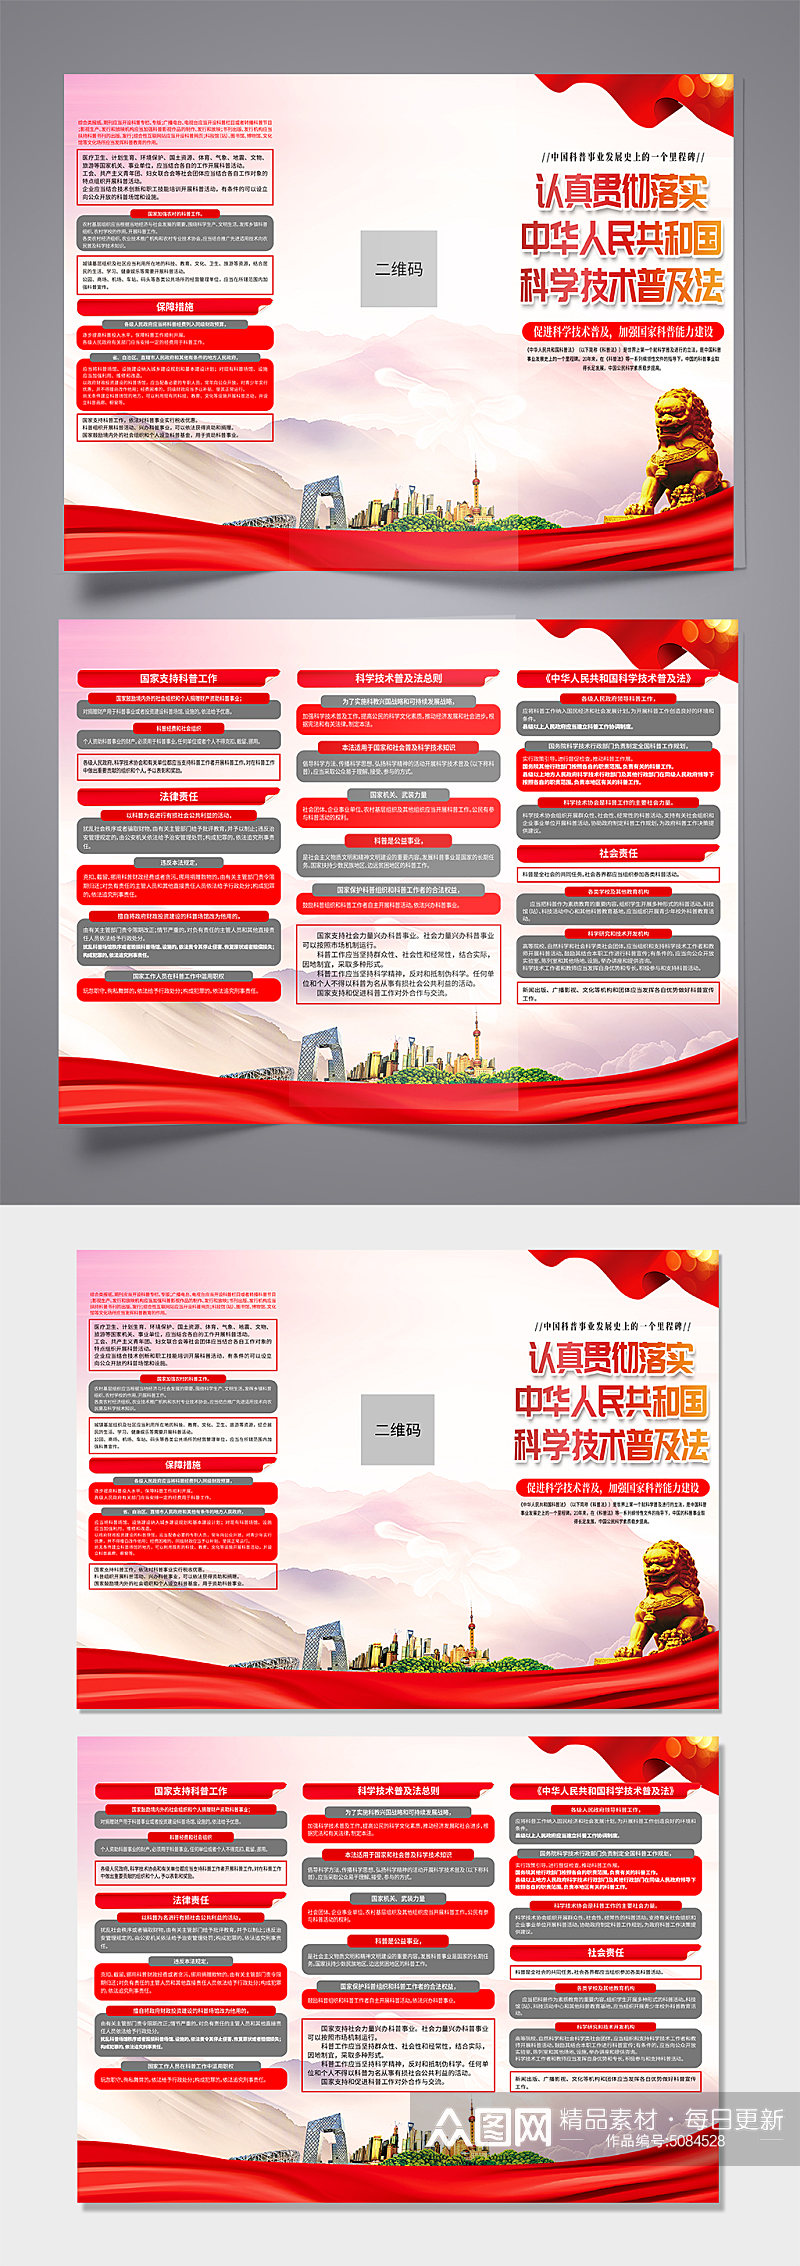 大气中华人民共和国科学技术普及法党建折页素材